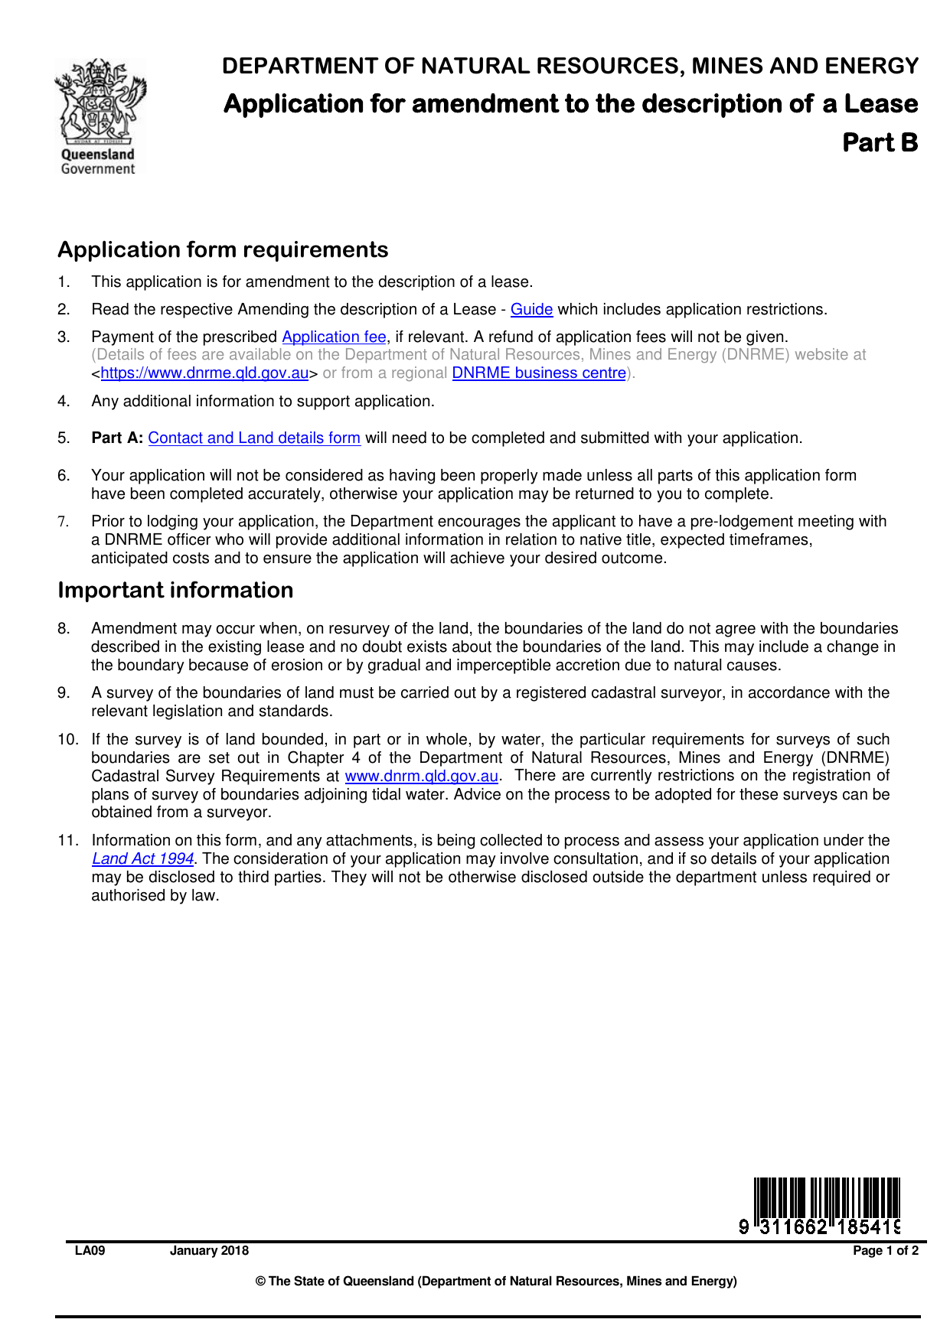 Form LA09 Part B Application for Amendment to the Description of a Lease - Queensland, Australia, Page 1